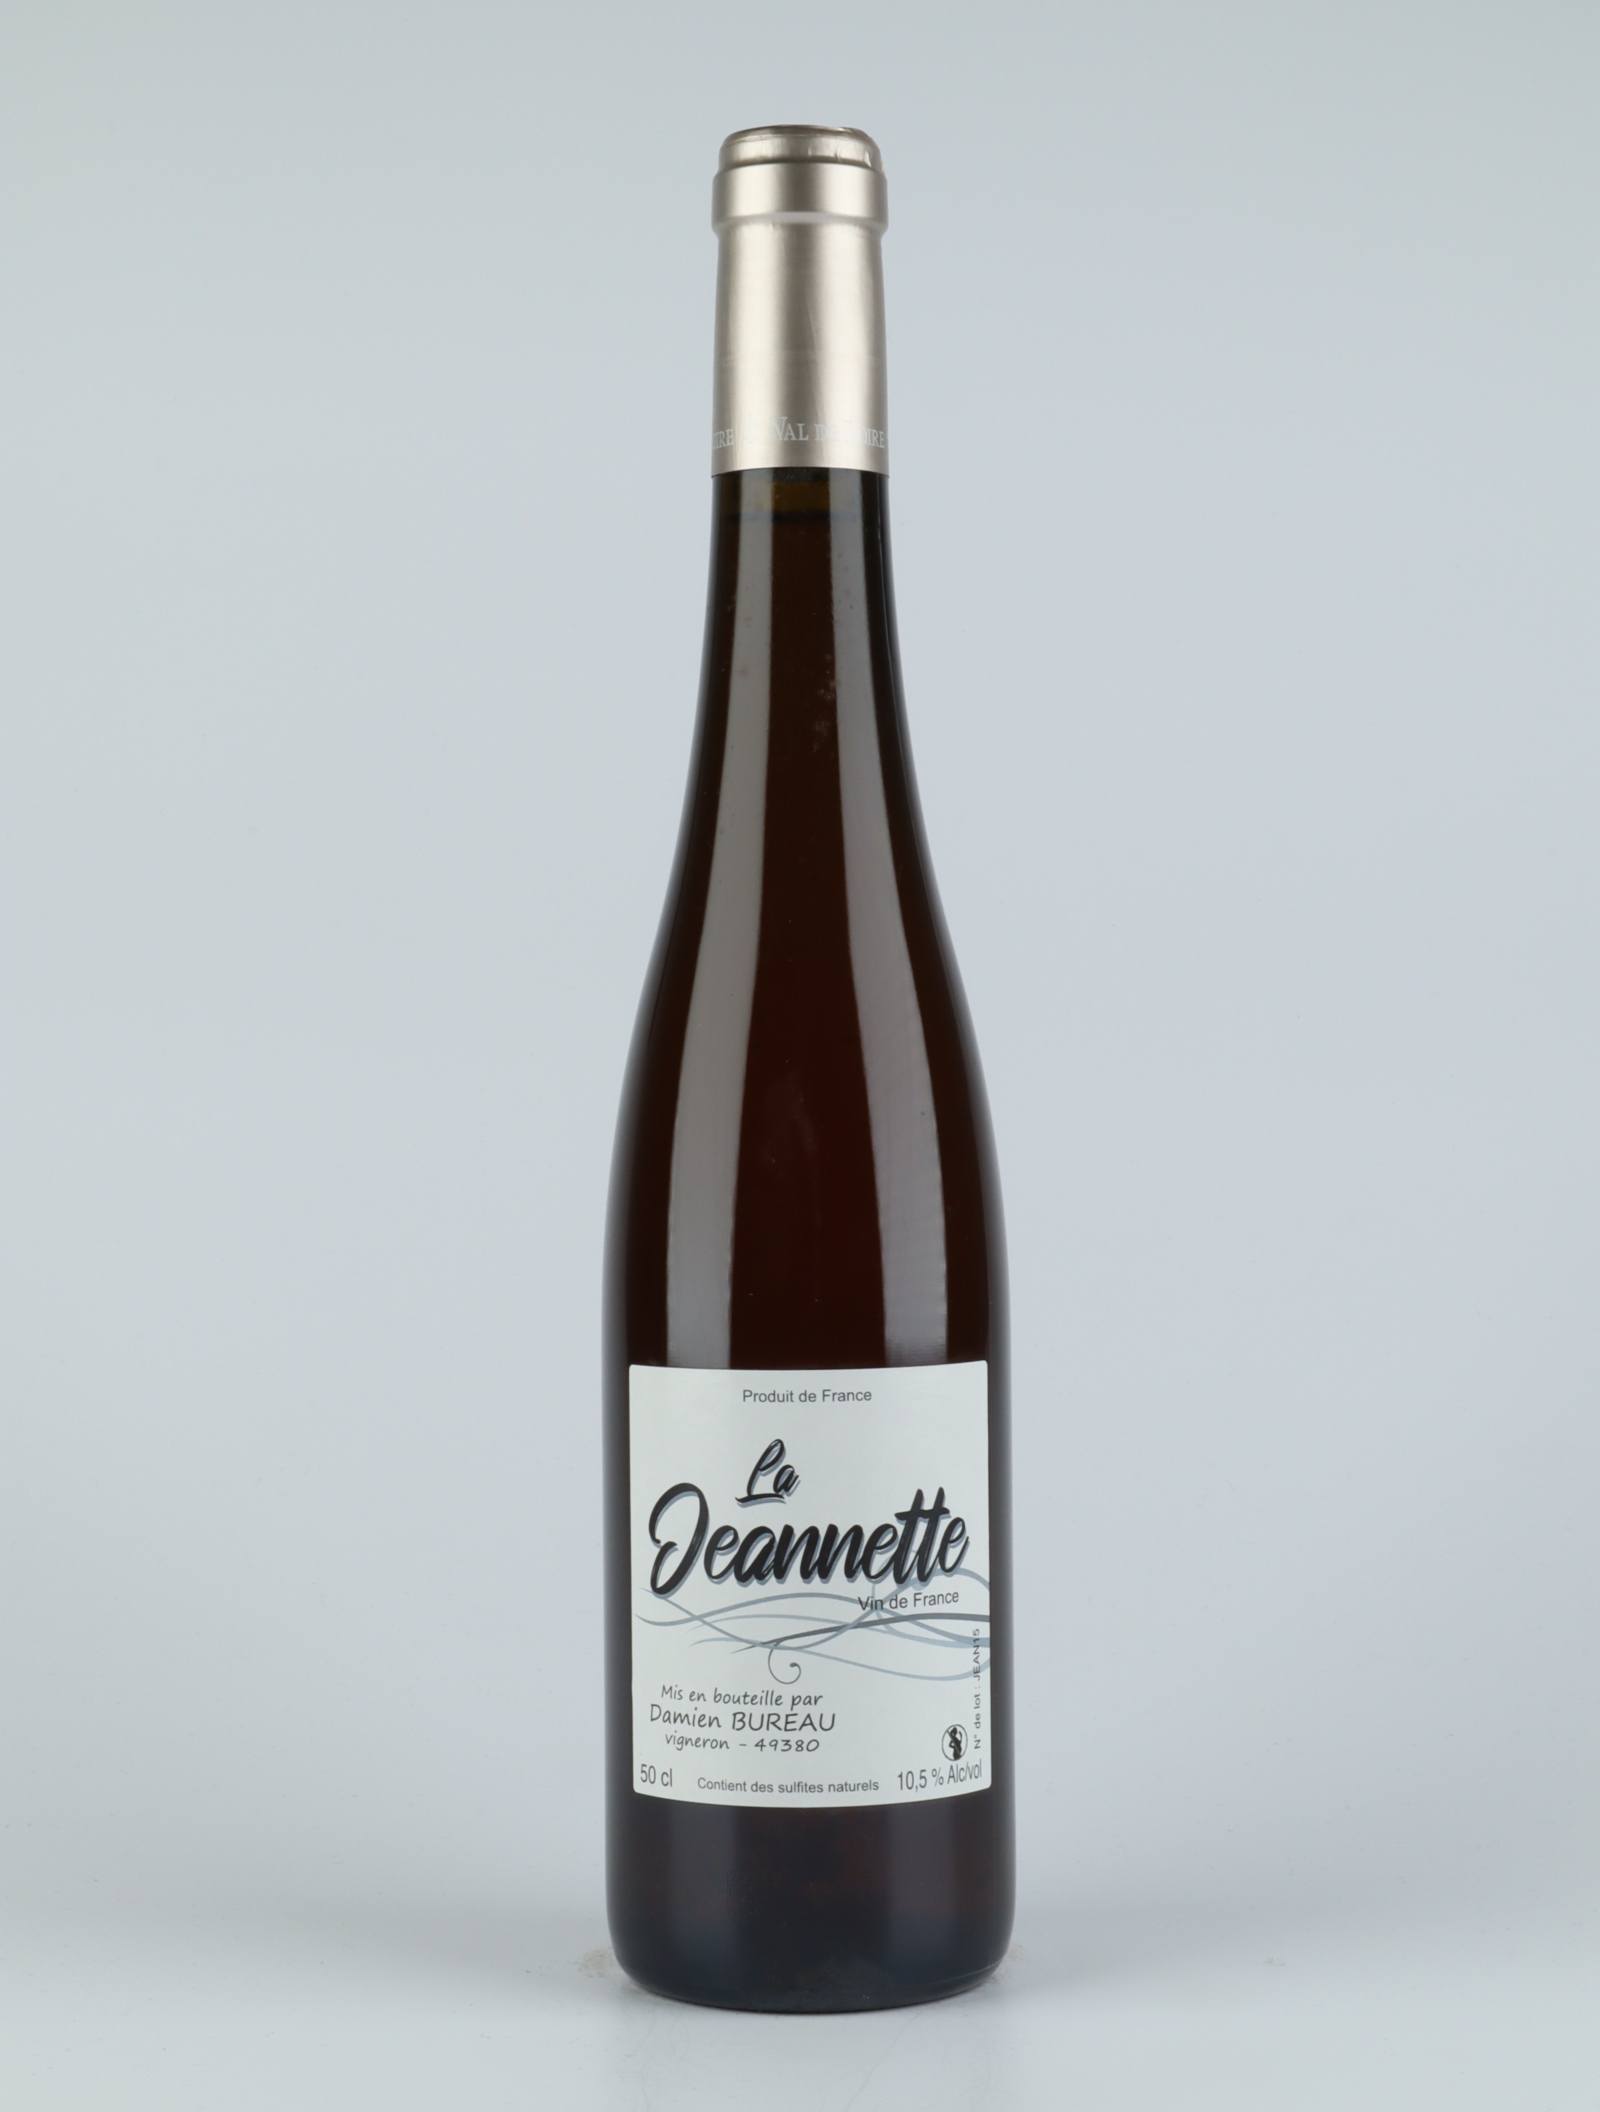 A bottle 2015 La Jeanette Sweet wine from Damien Bureau, Loire in France